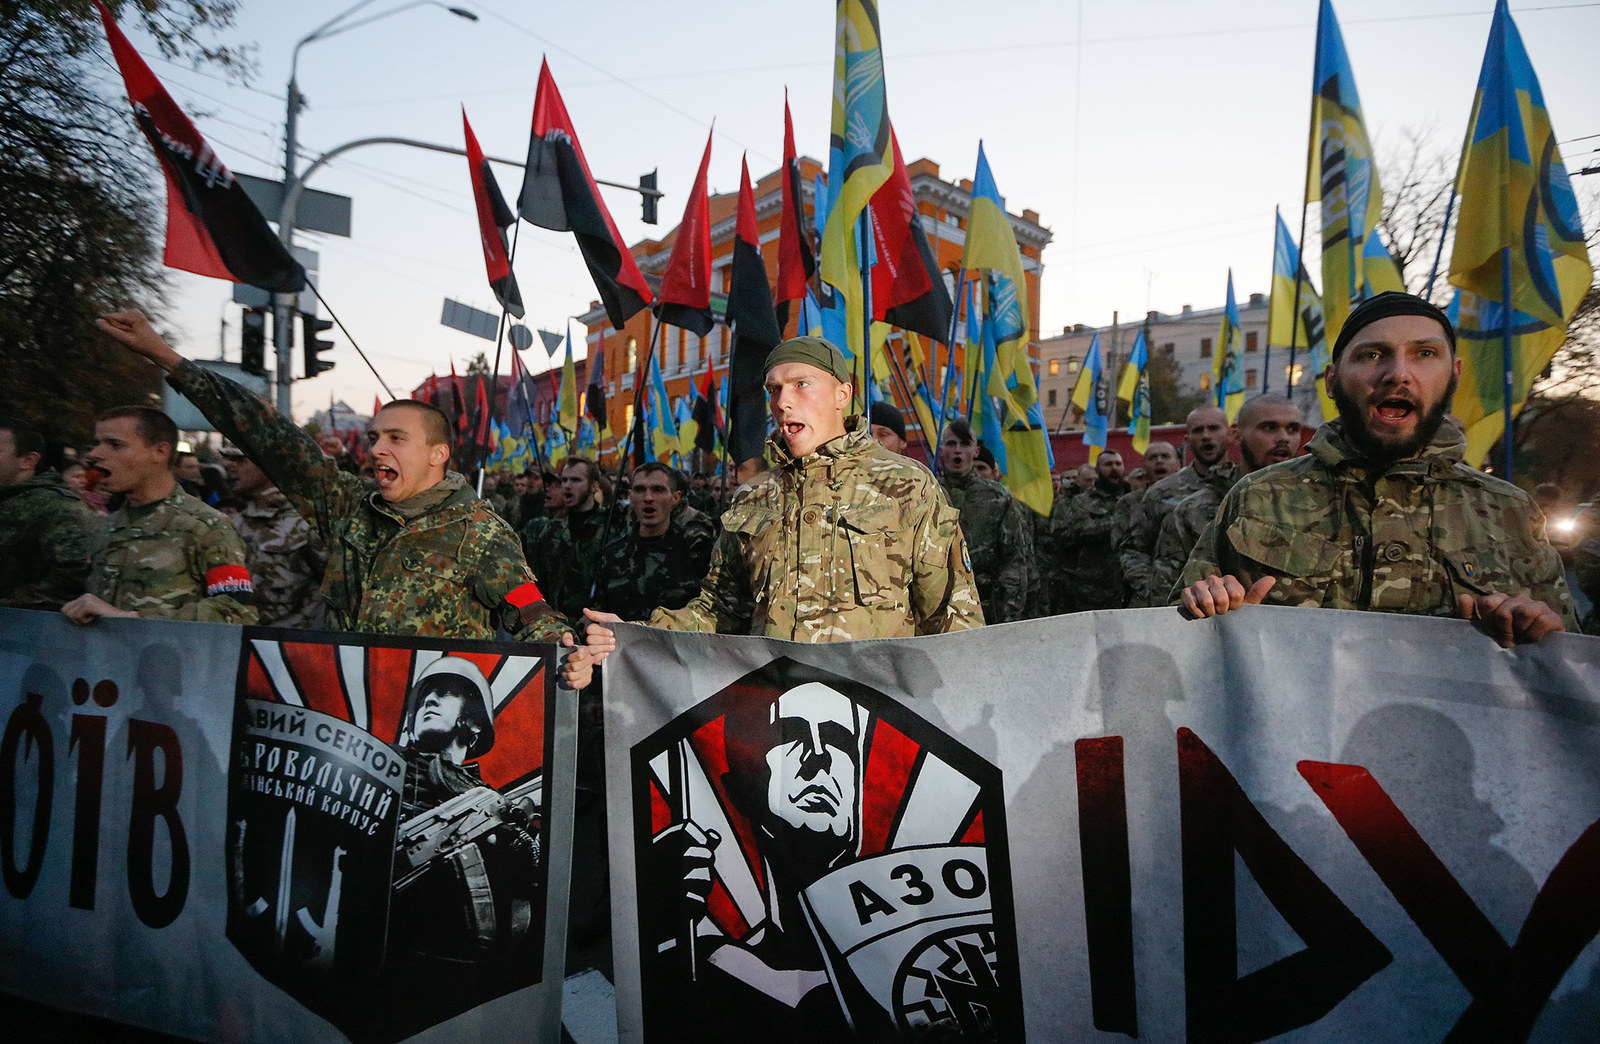 Naționaliștii extremiști ucraineni au atacat frecvent obiective culturale și diplomatice românești din Ucraina